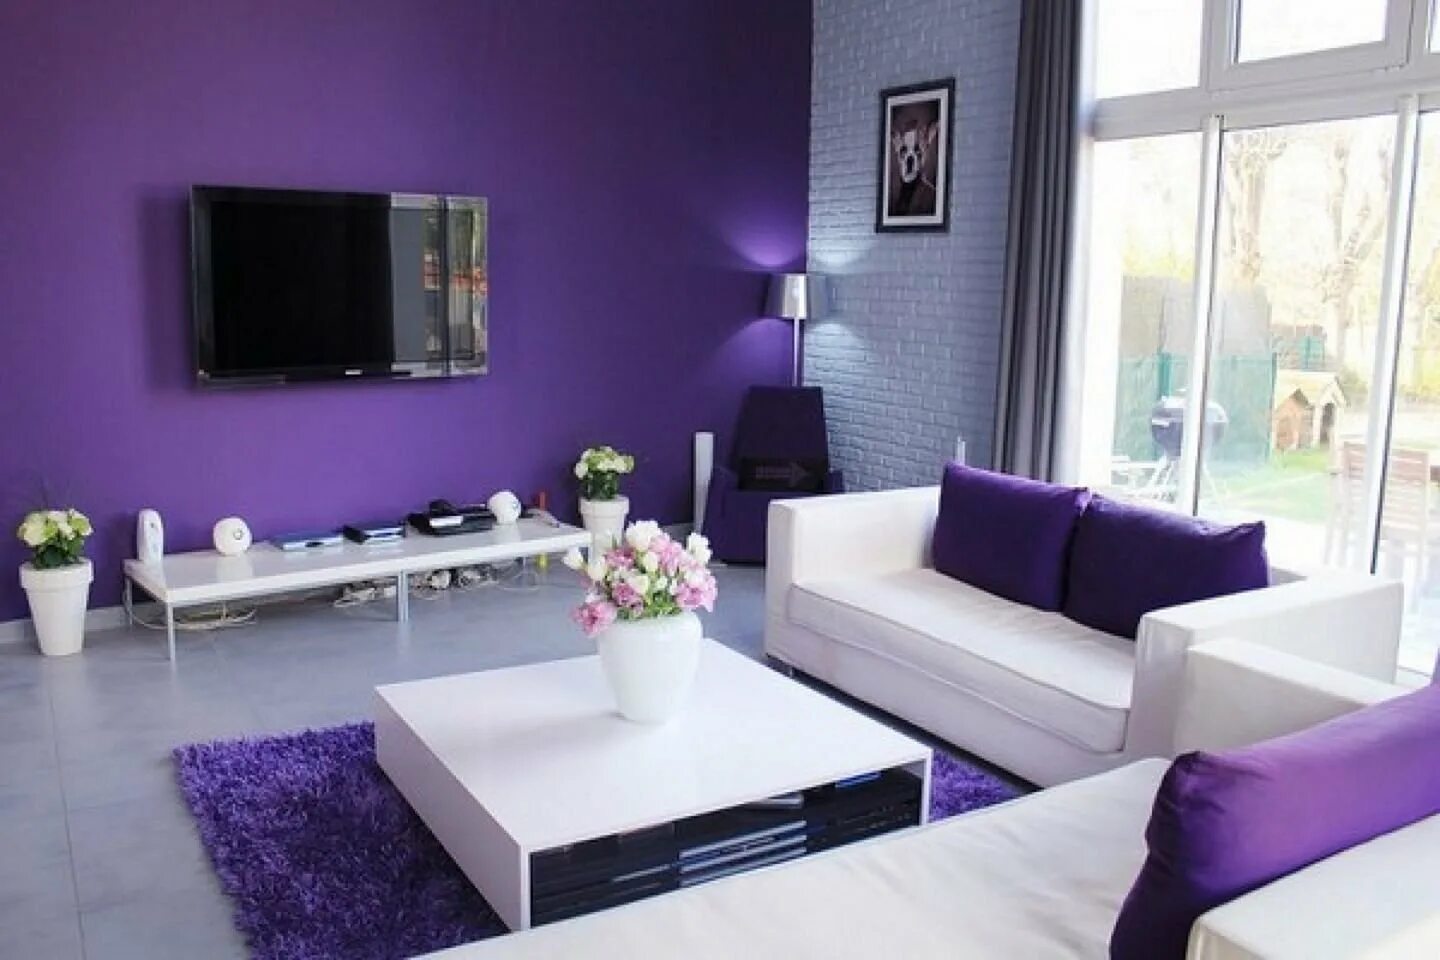 Выделение фиолетового цвета. Сиреневый цвет в интерьере. Фиолетовый в интерьере гостиной. Фиолетовый цвет в интерьере. Интерьер в фиолетовых тонах.